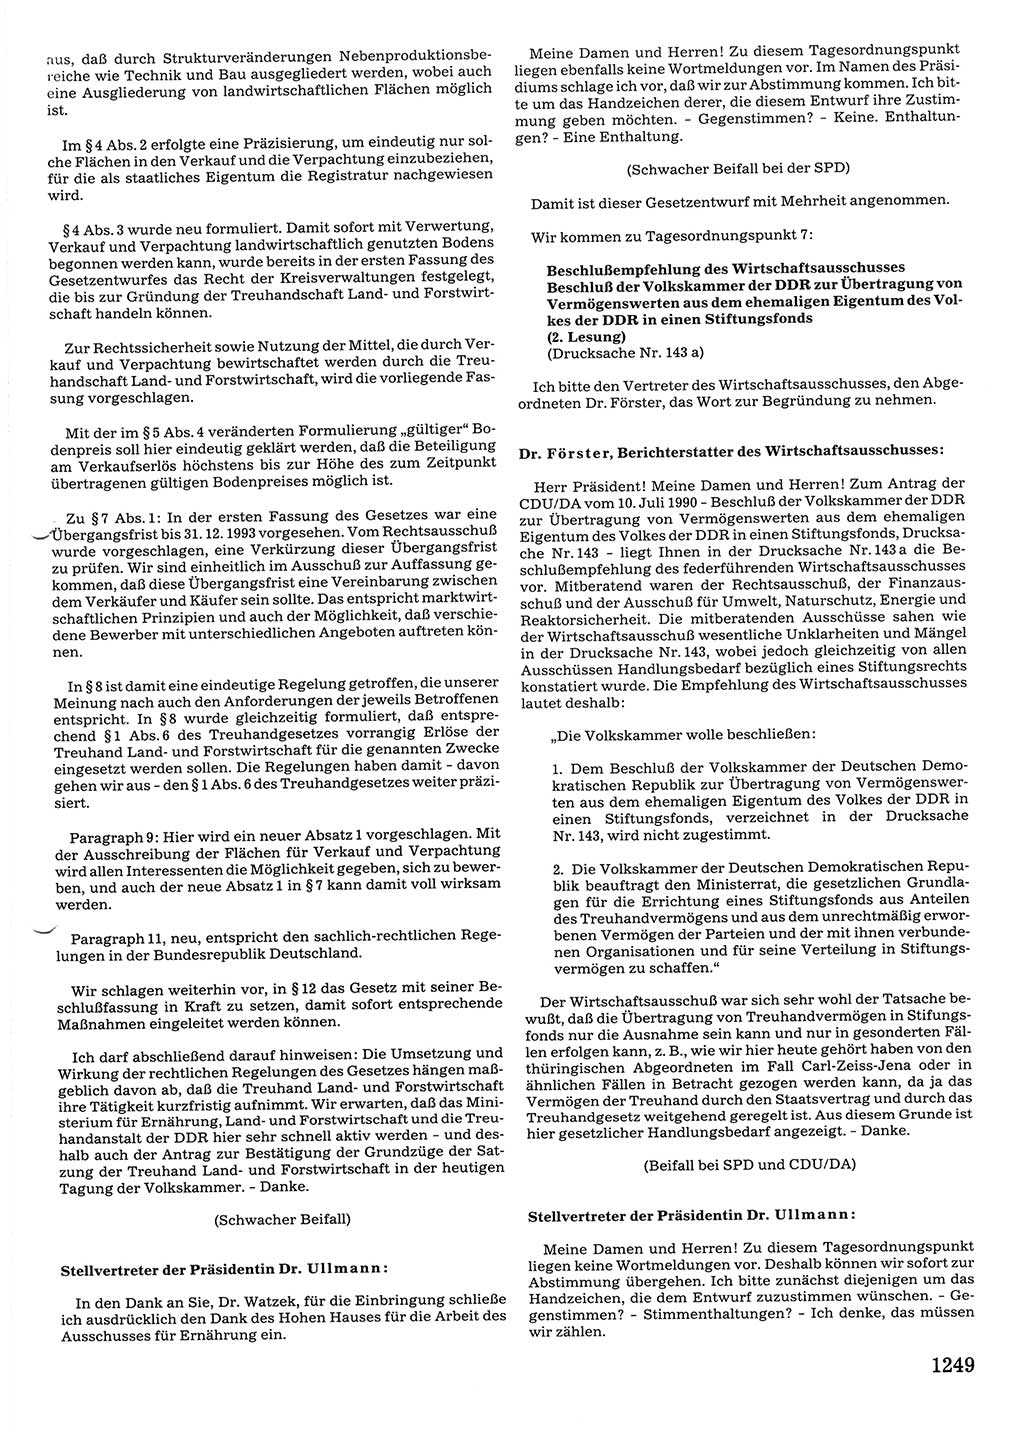 Tagungen der Volkskammer (VK) der Deutschen Demokratischen Republik (DDR), 10. Wahlperiode 1990, Seite 1249 (VK. DDR 10. WP. 1990, Prot. Tg. 1-38, 5.4.-2.10.1990, S. 1249)